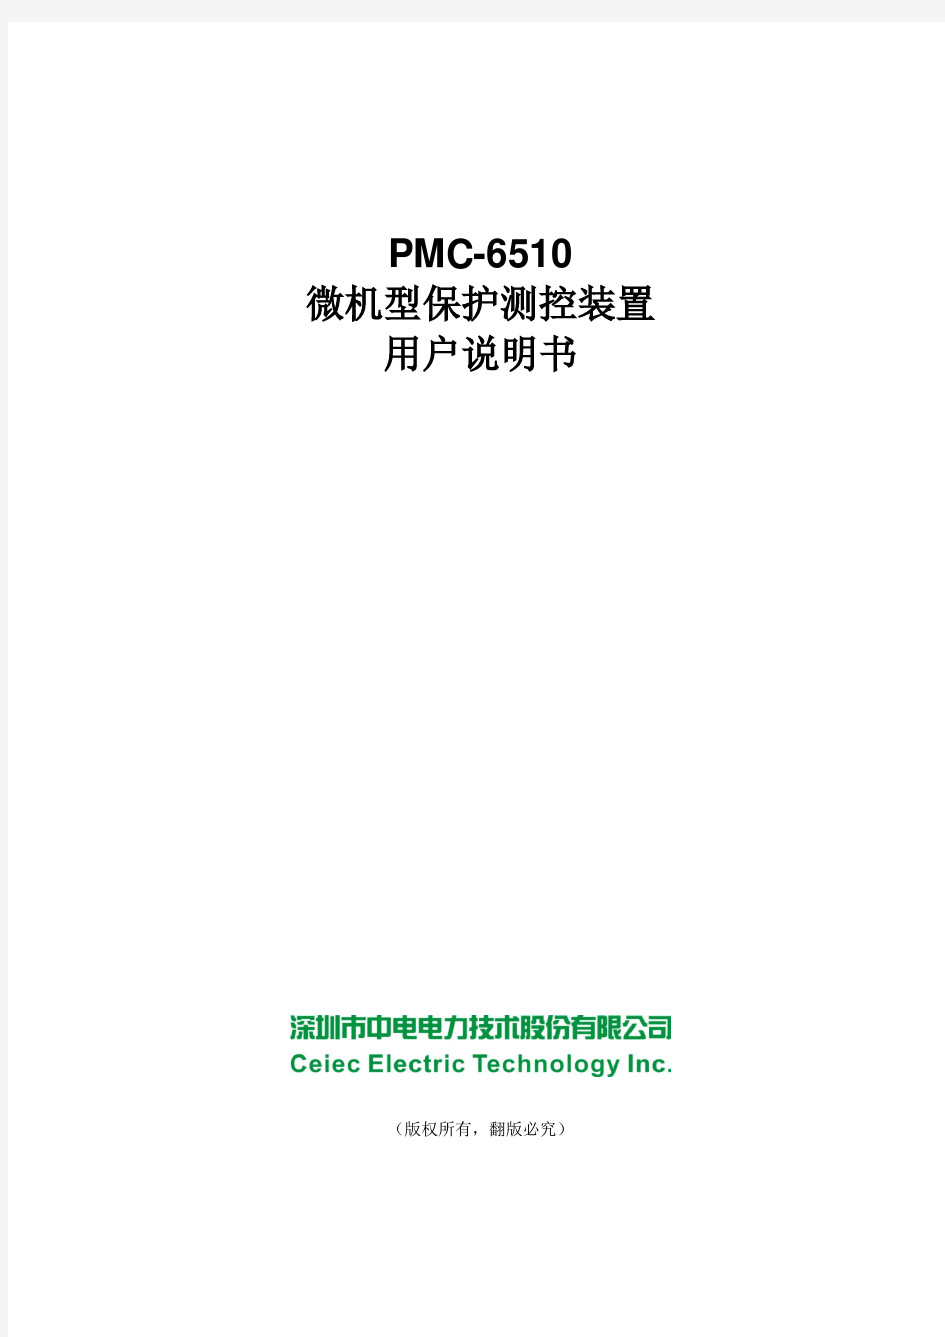 PMC-6510微机型保护测控装置用户说明书_V2.2